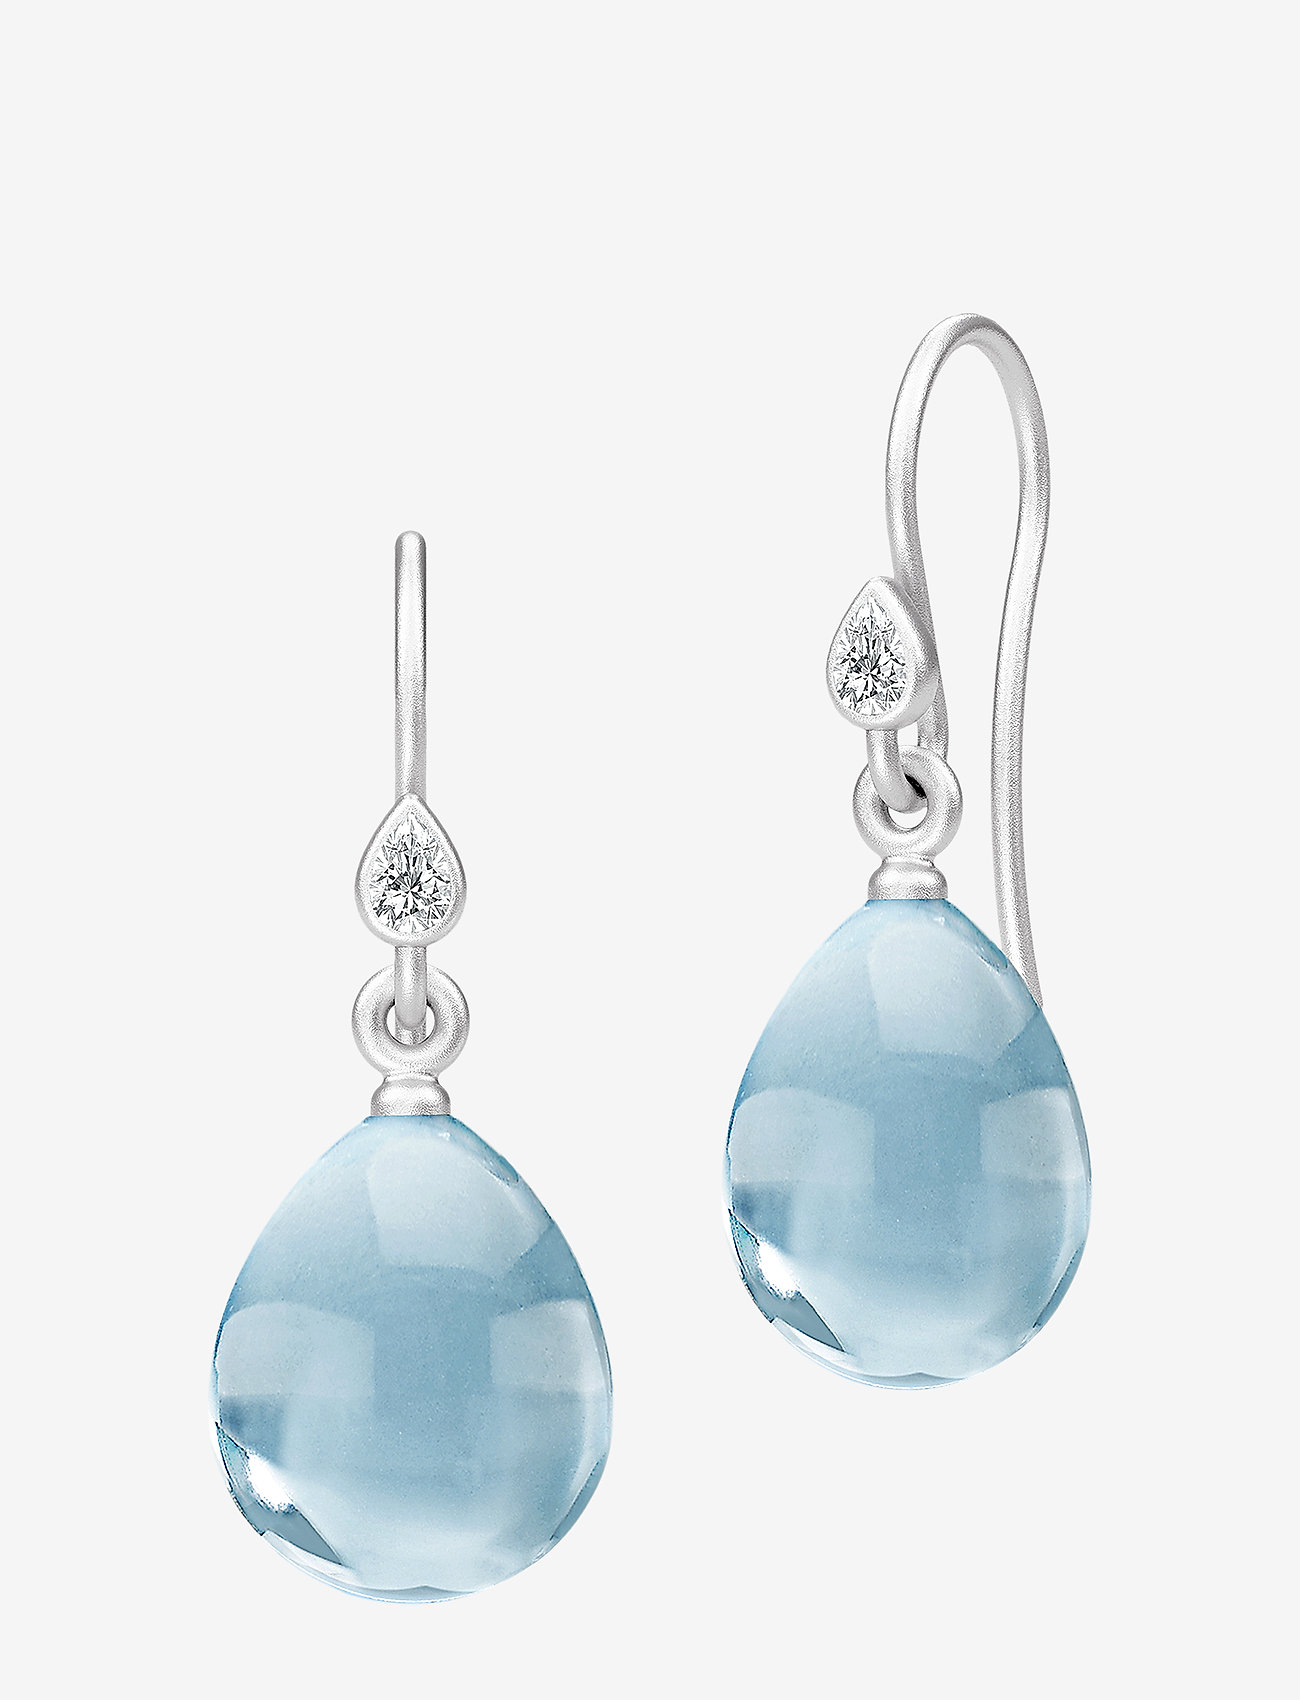 Julie Sandlau - Prima Ballerina Earrings - Rhodium/Ocean - rhodium / ocean blue - 0